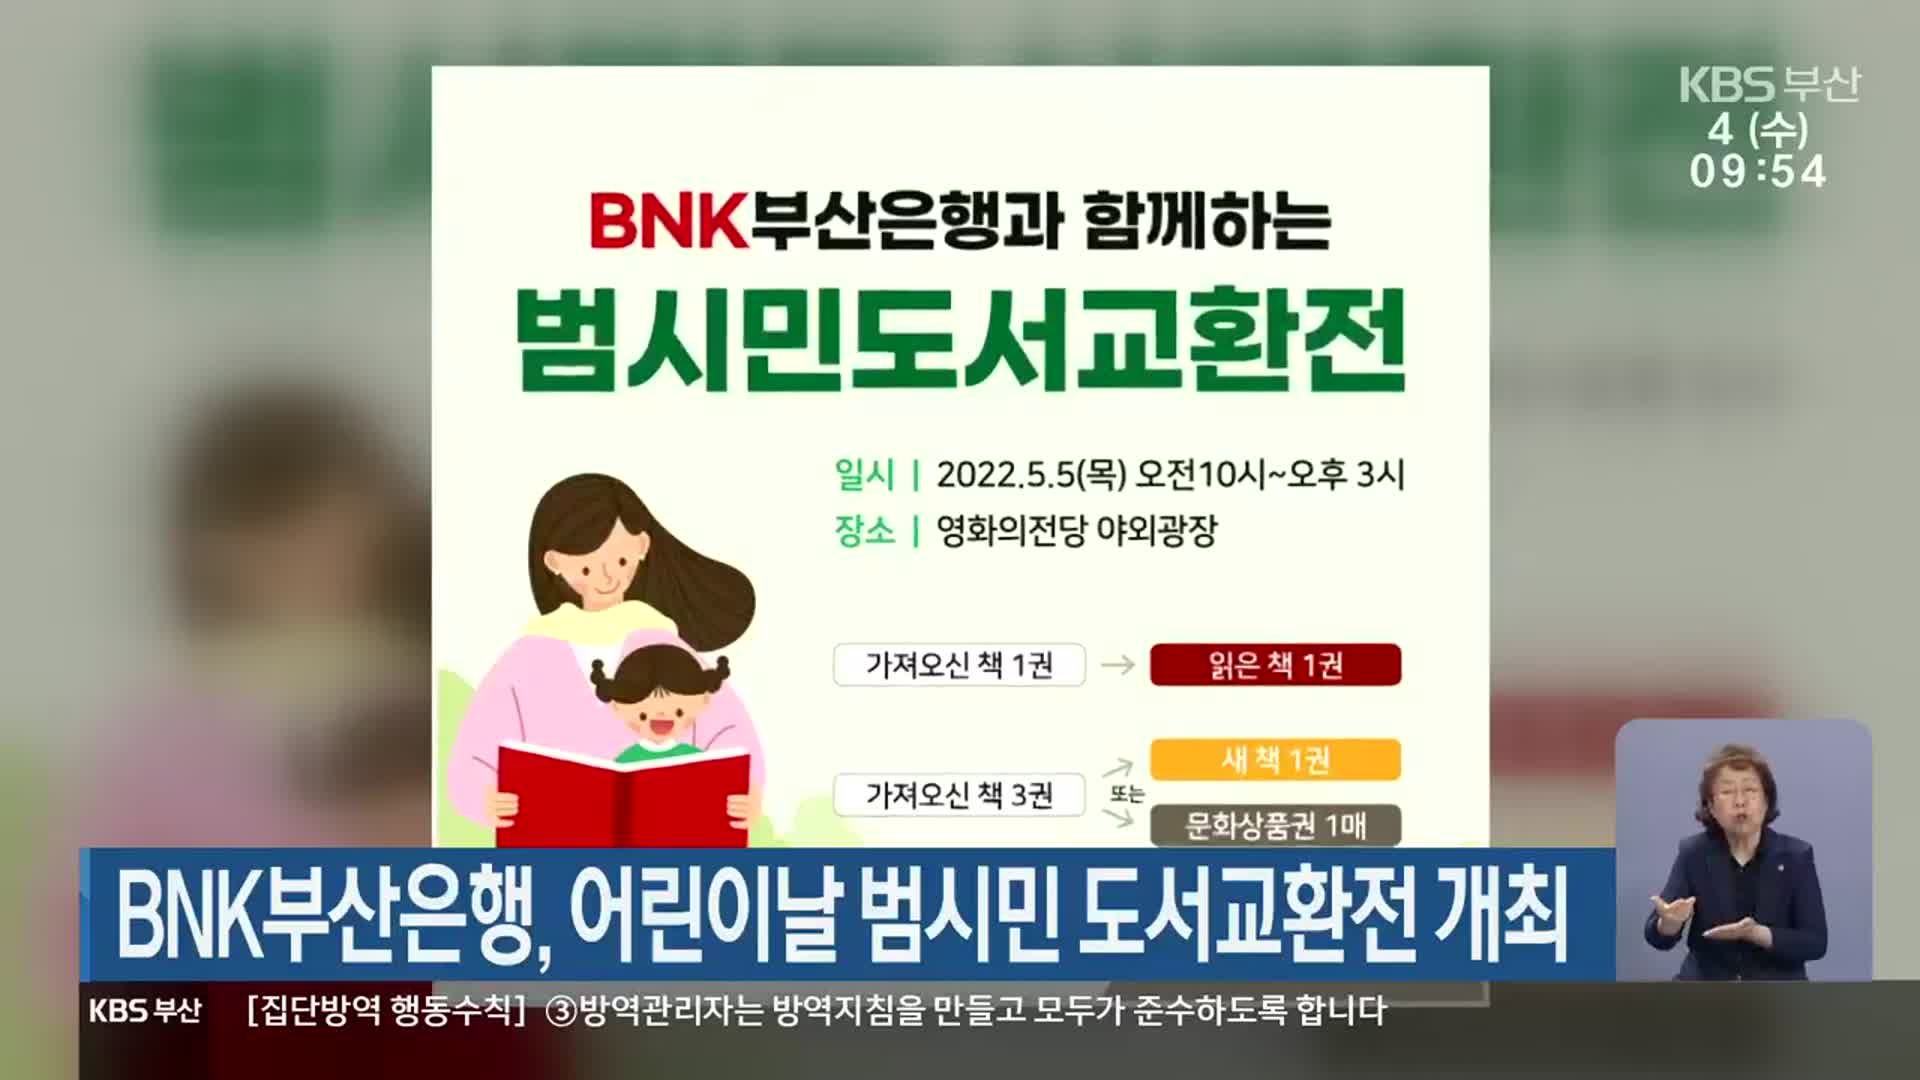 BNK부산은행, 어린이날 범시민 도서교환전 개최